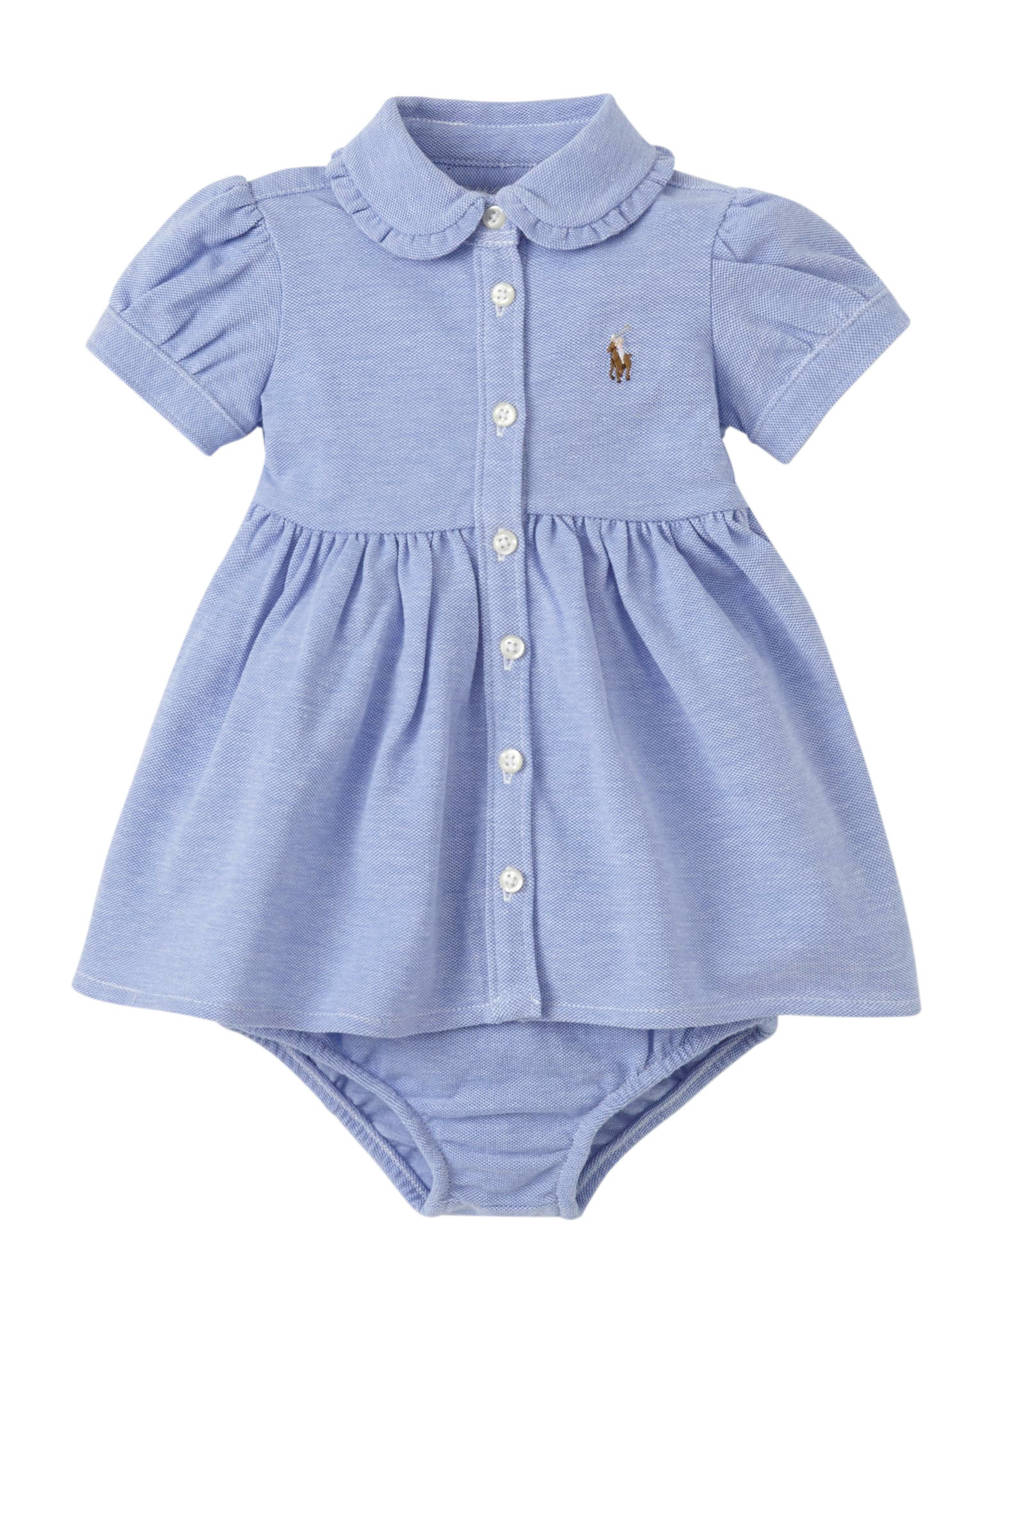 Werkgever Zus bijzonder POLO Ralph Lauren baby jurk met ruches blauw mÃ£Âªlee | wehkamp